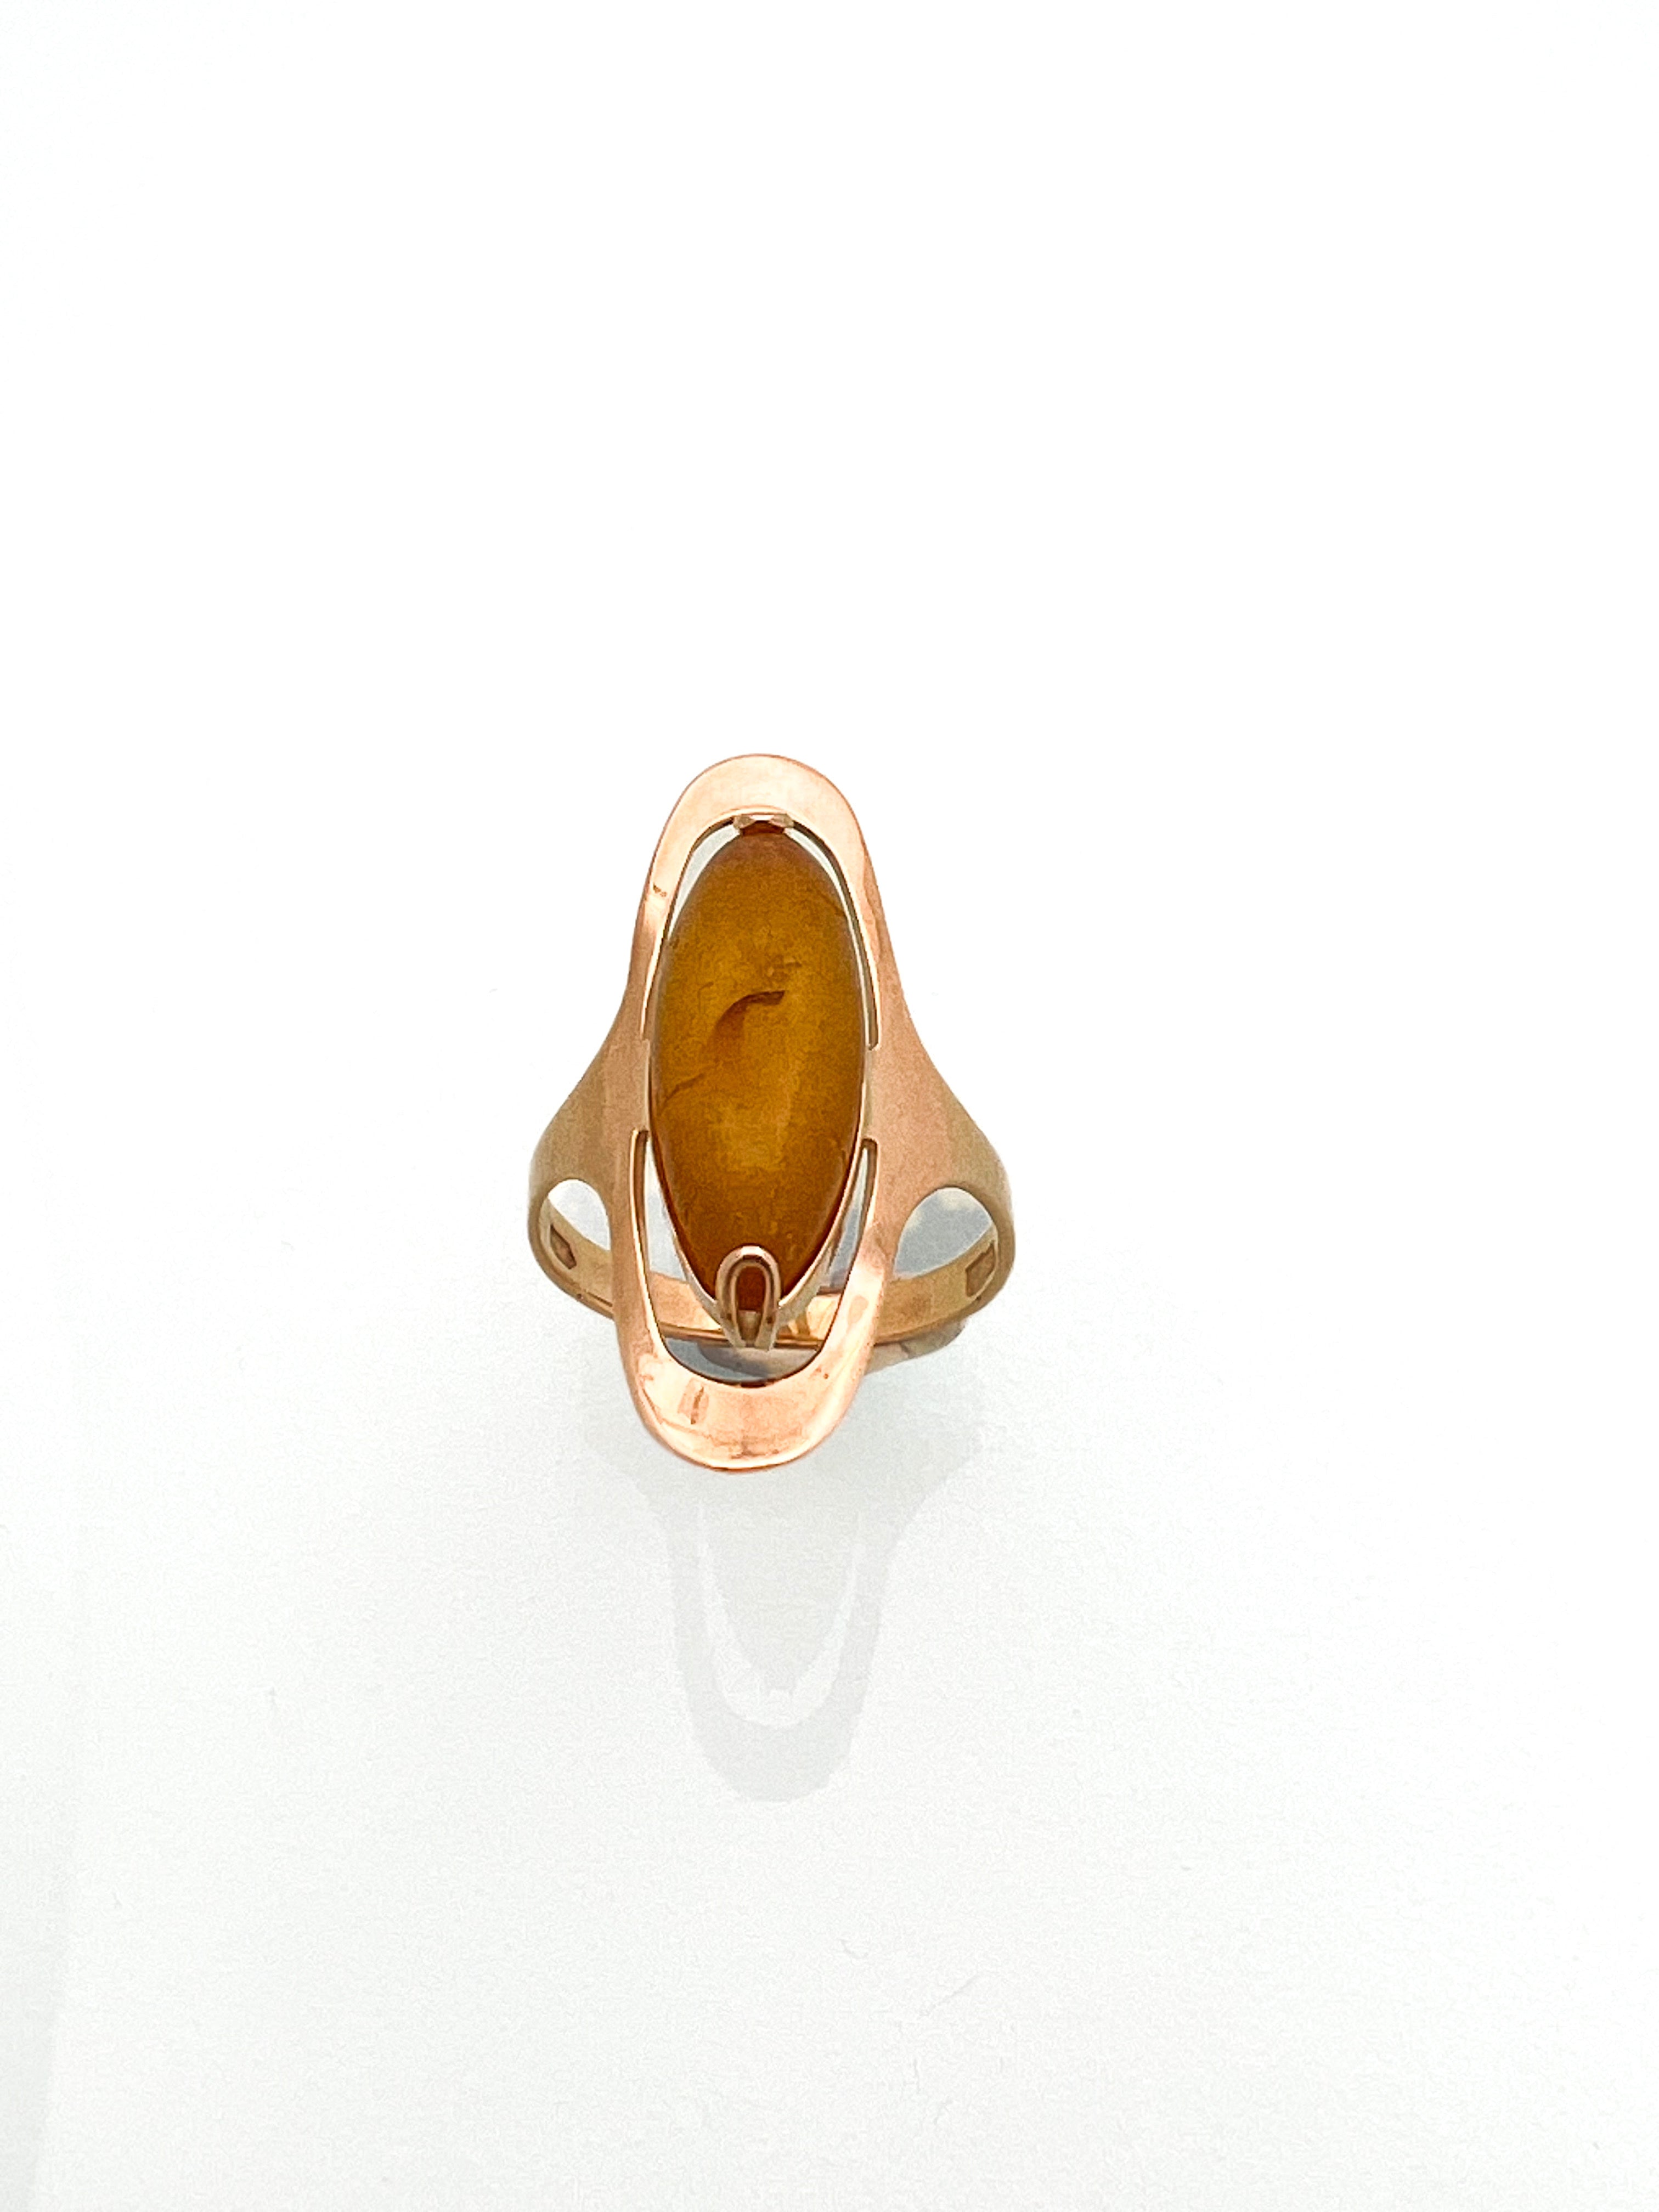 טבעת אובלית זהב אדום 14 קארט עם אבן אמבר